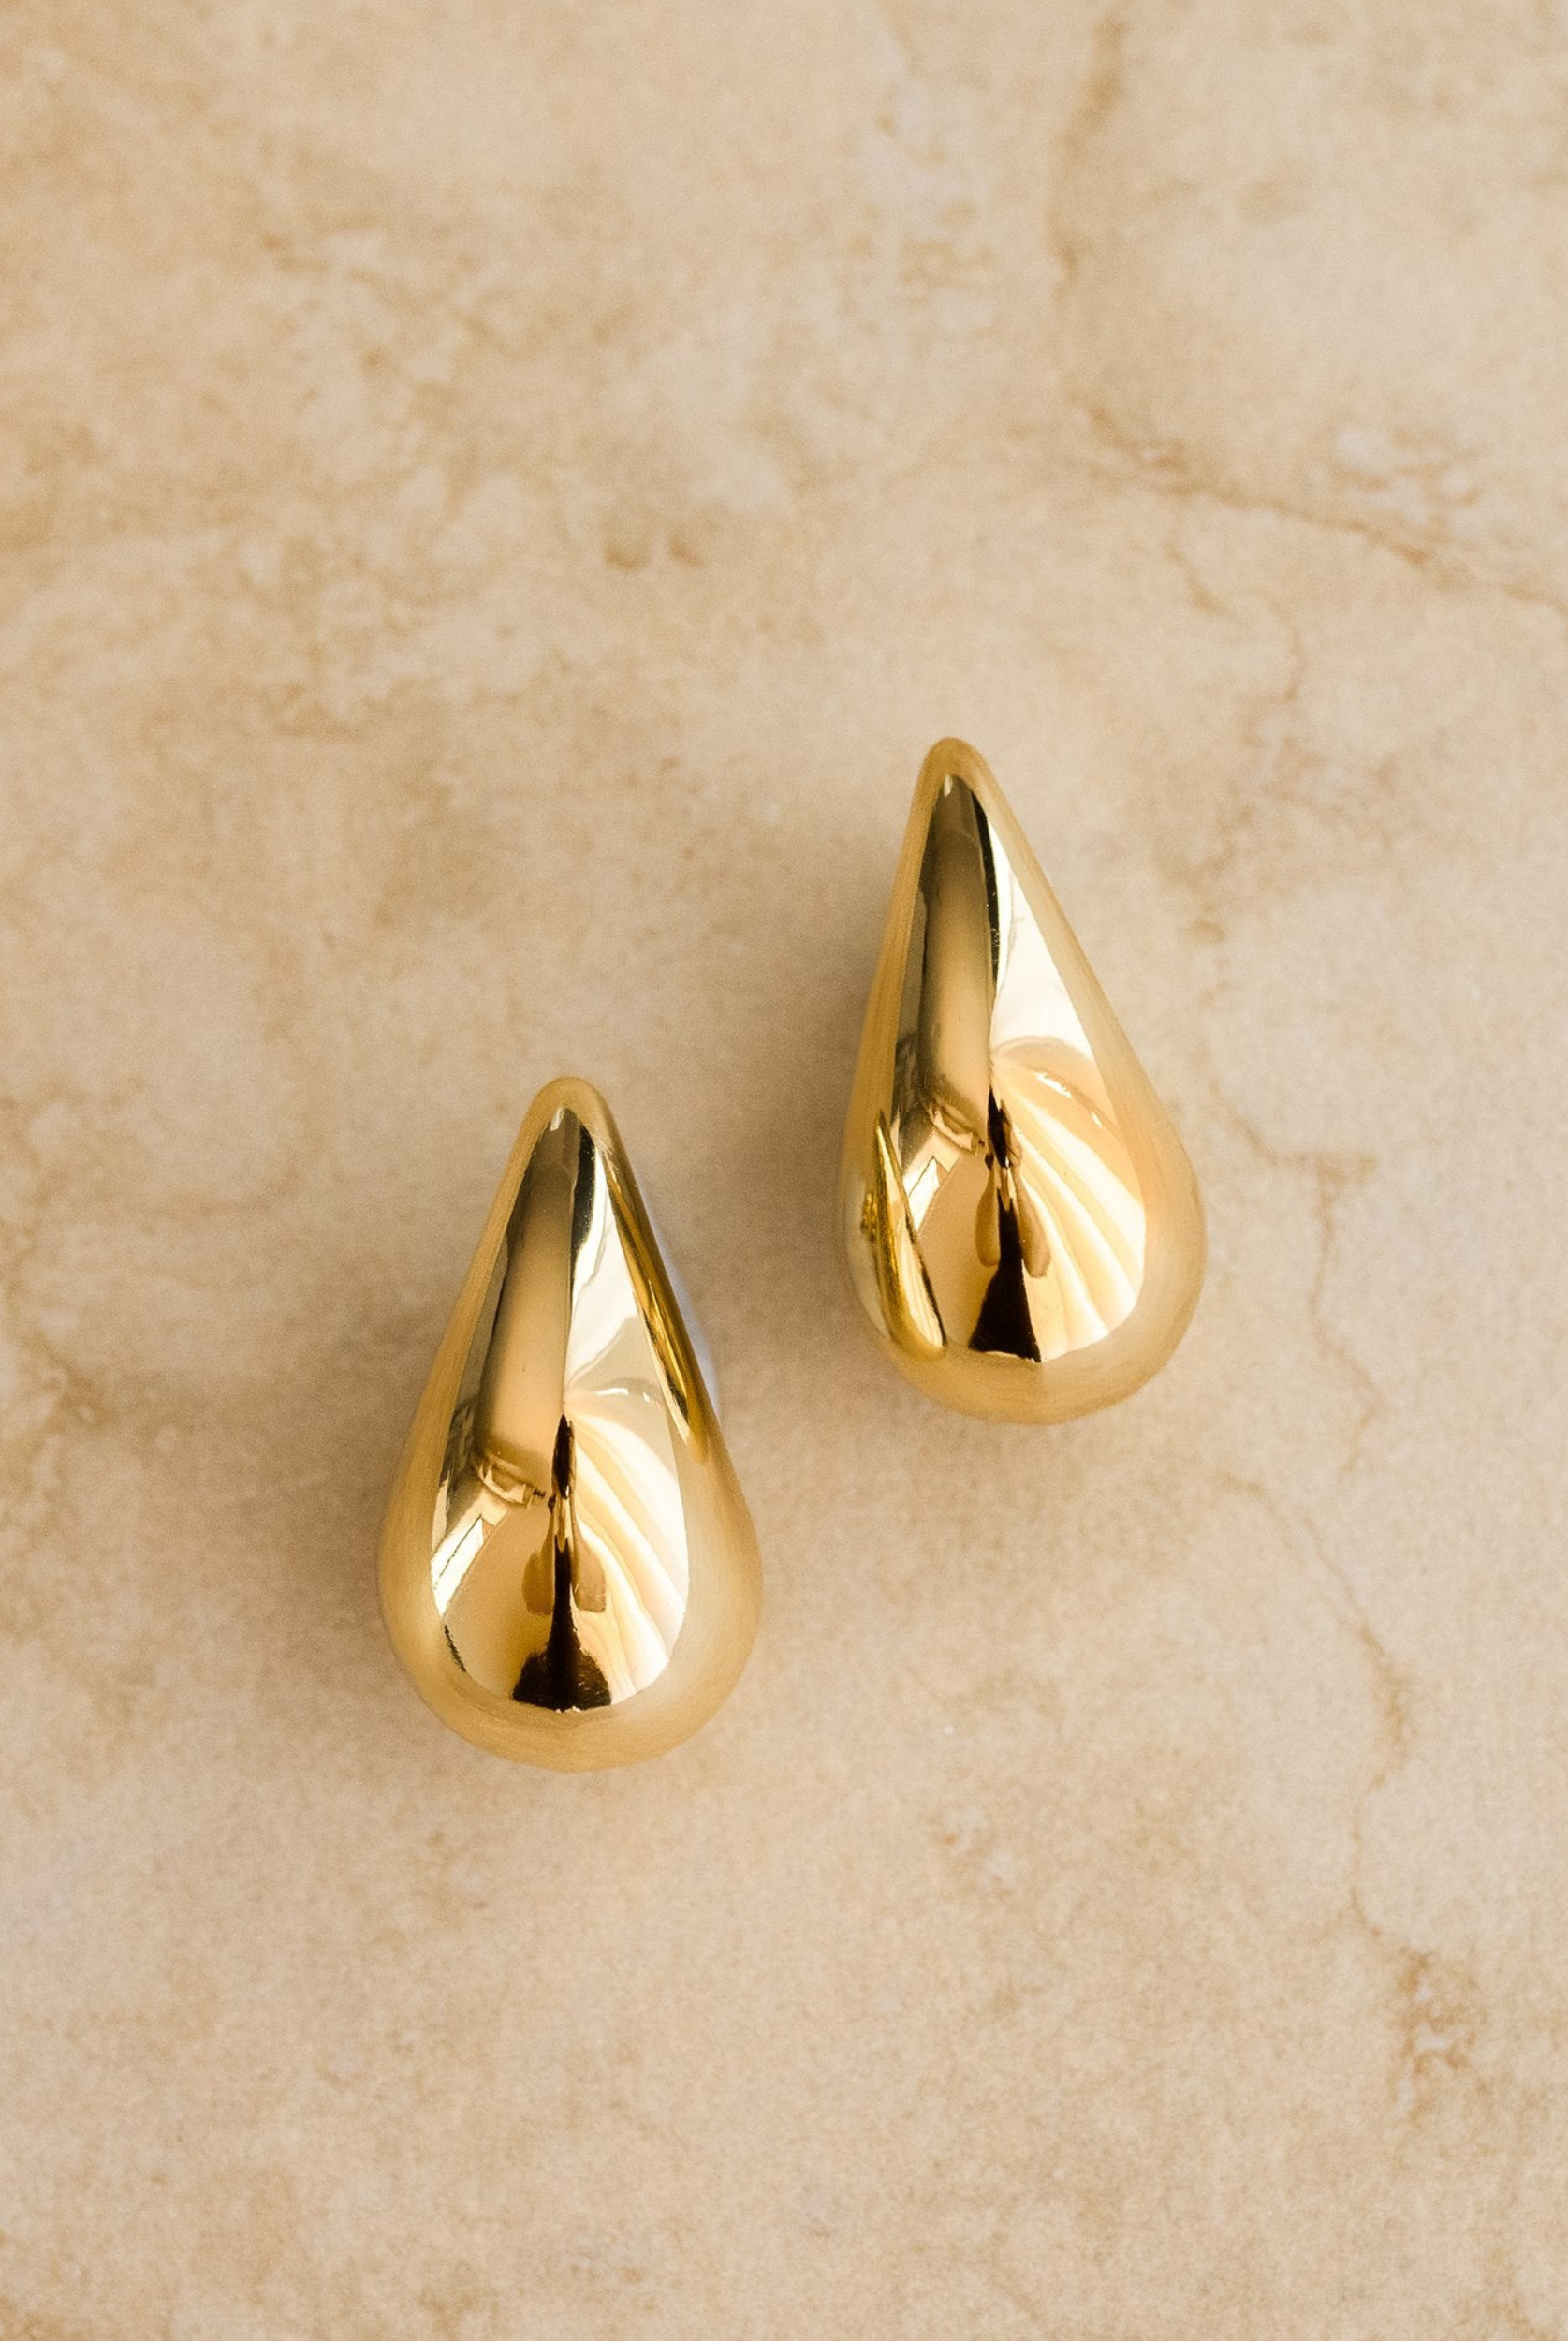 Sophia gold teardrop earrings from Indigo & Wolfe